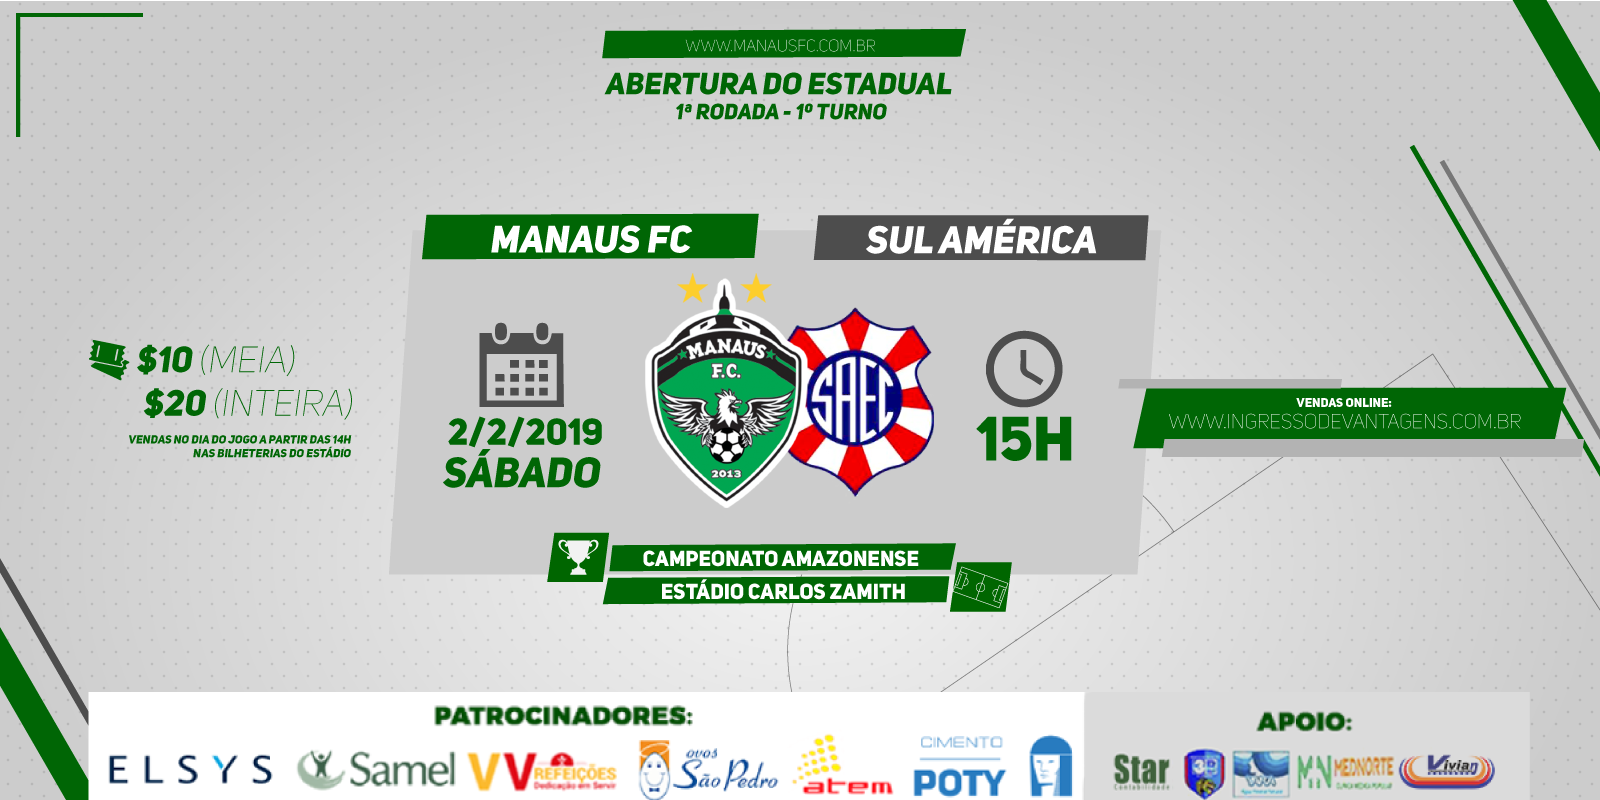 Manaus FC x Sul América: ingressos disponíveis para venda pela internet